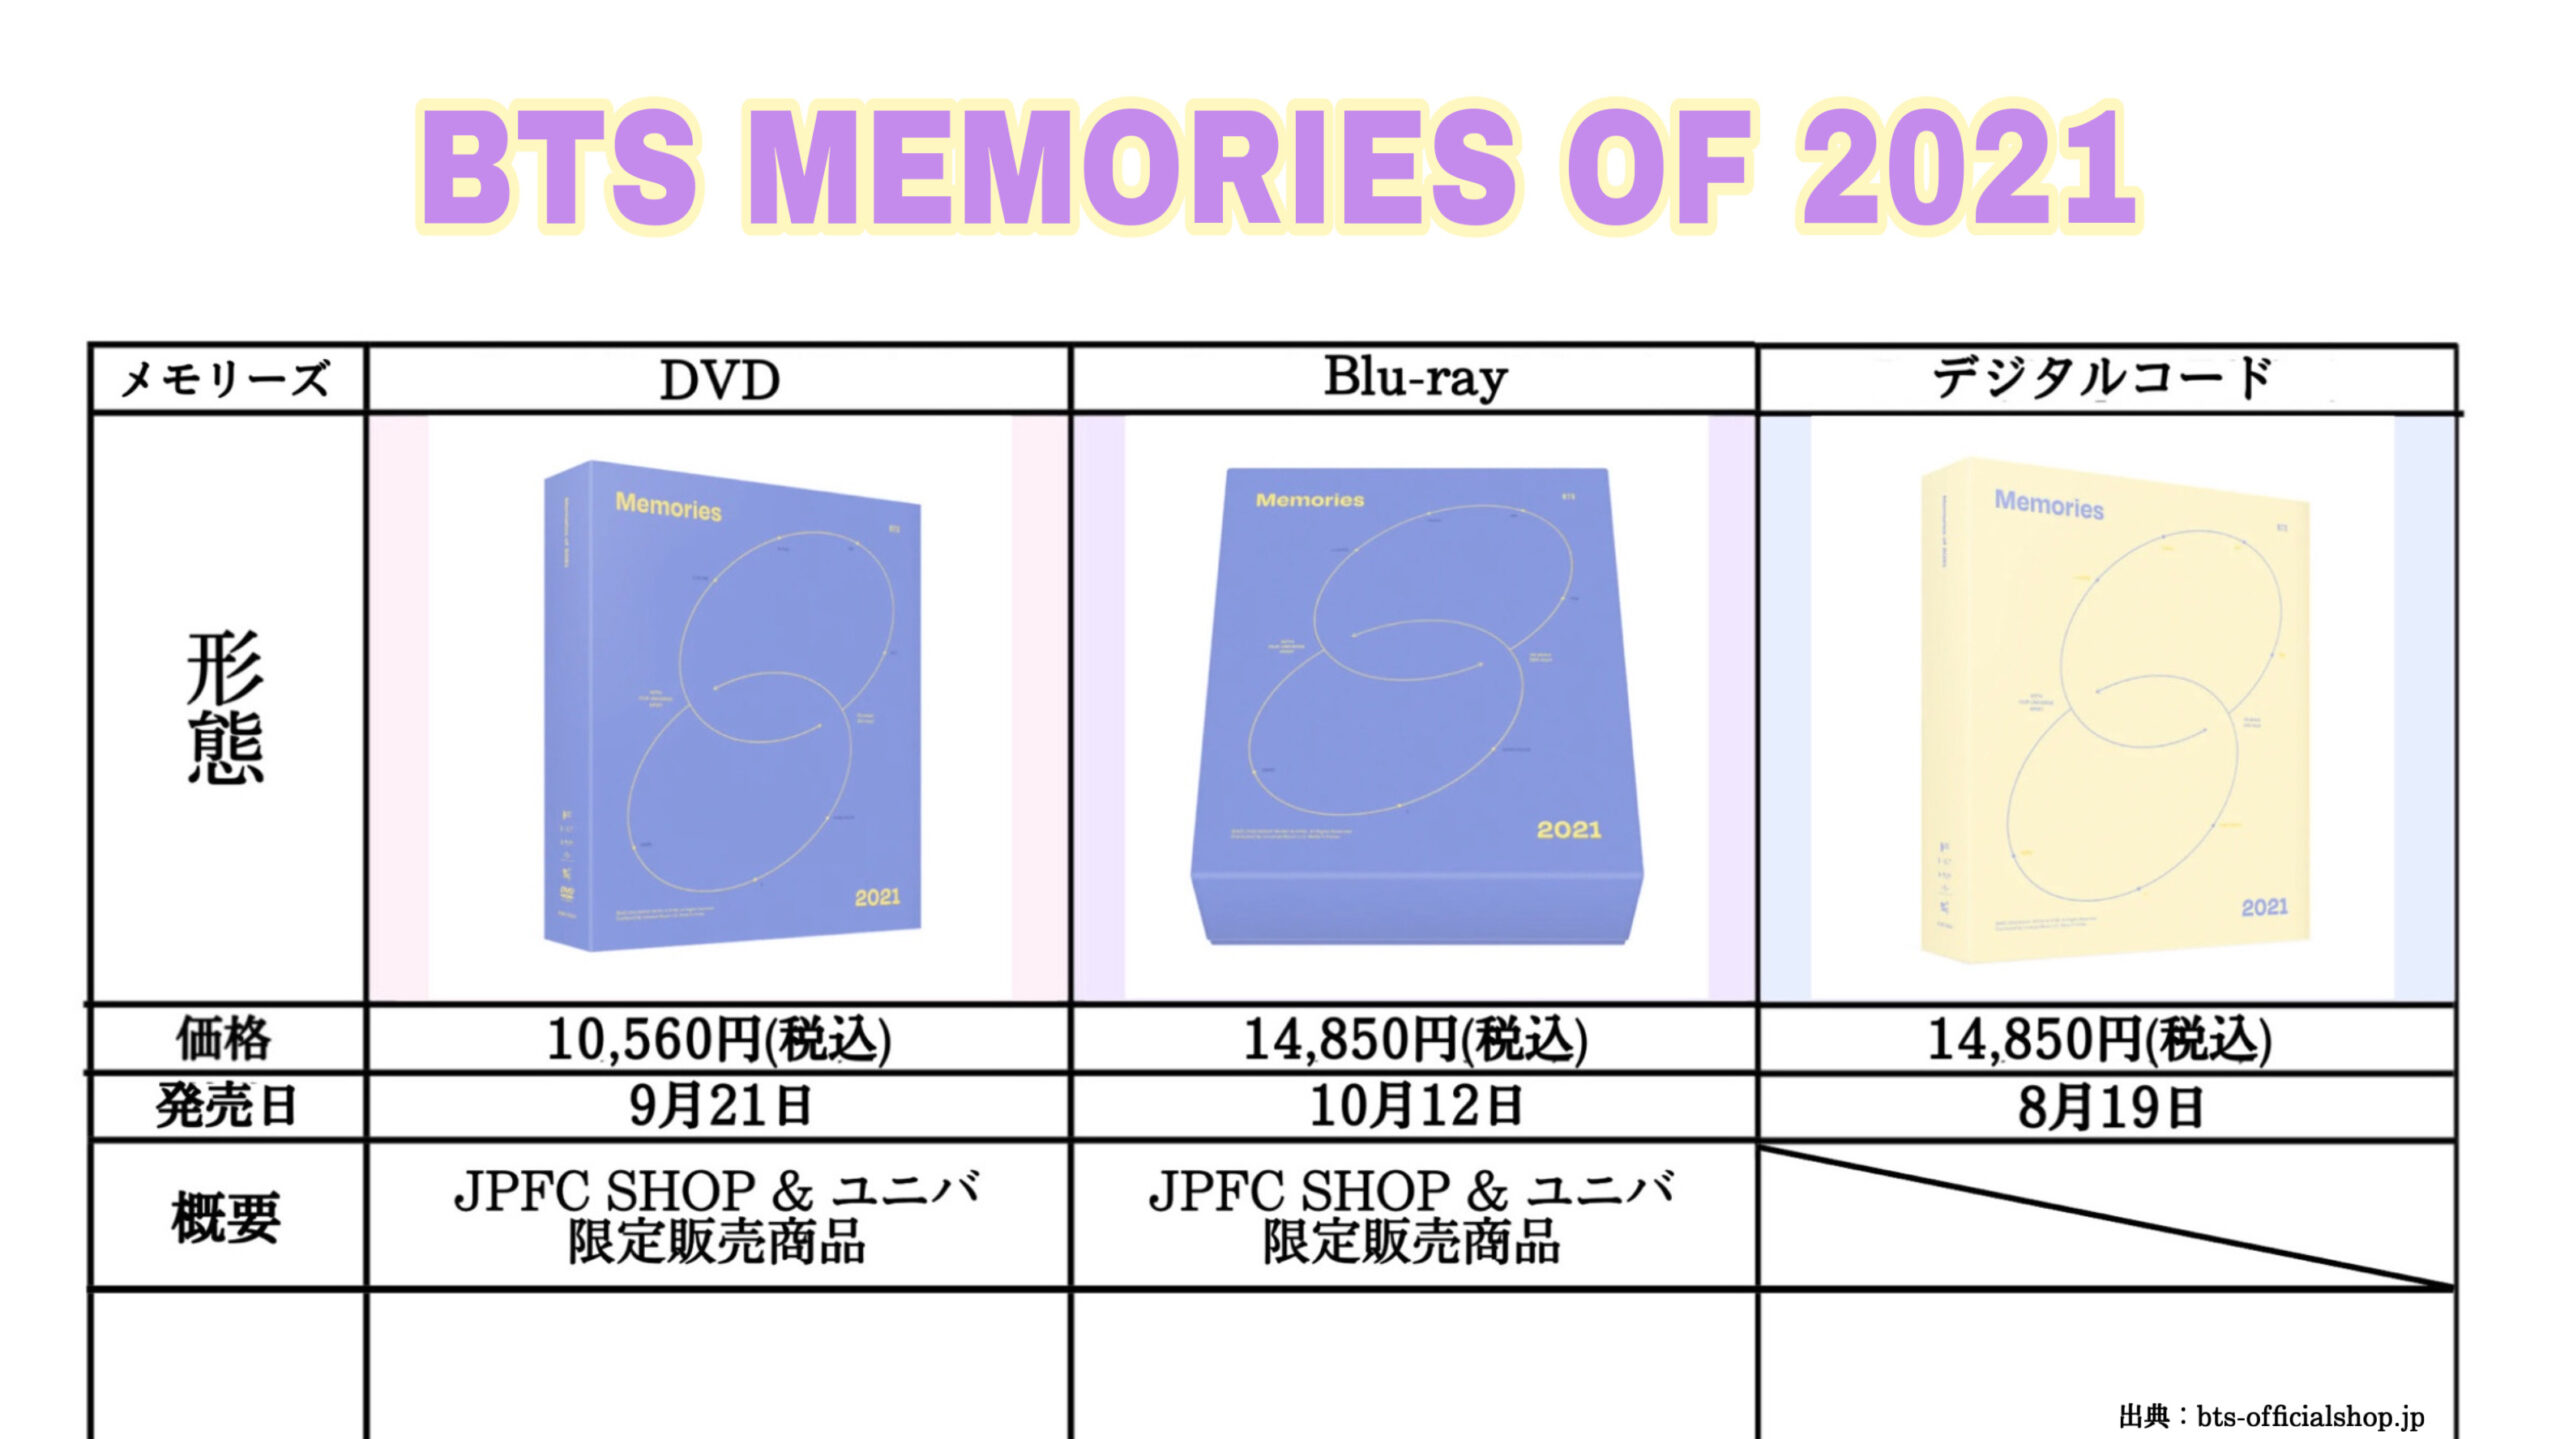 最新 BTS DVD MEMORIES OF 2021 メモリーズ トレカ無し www